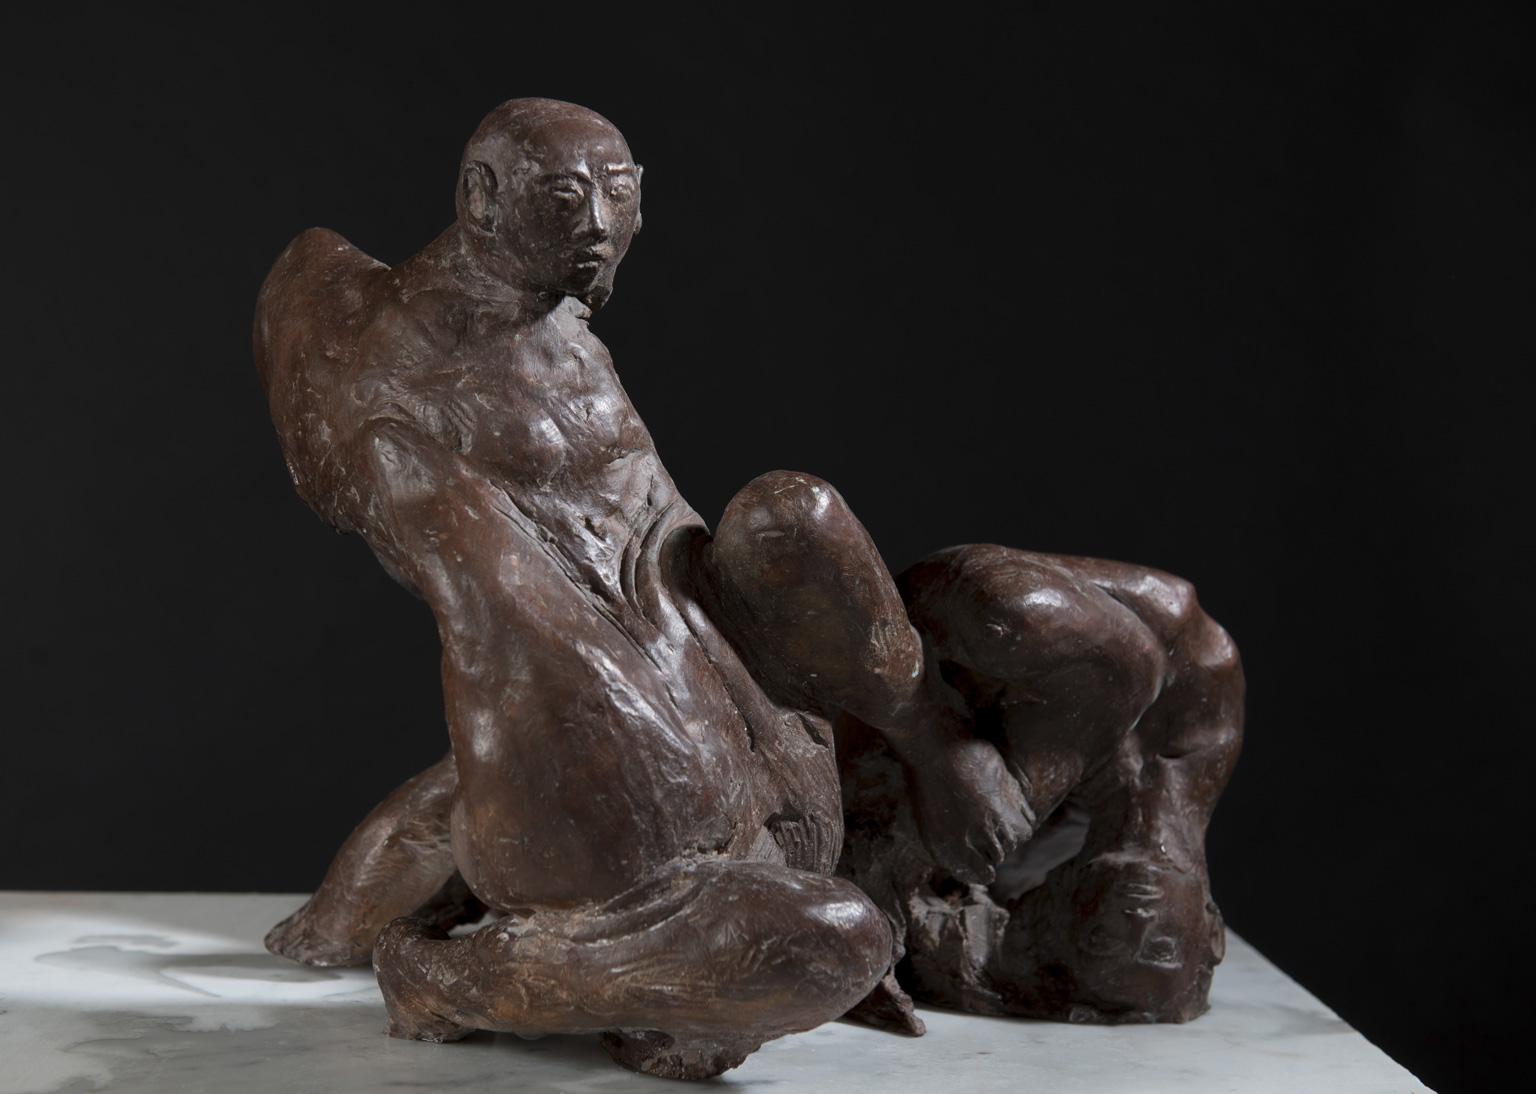 a strikingly expressive bronze sculpture by contemporary Italian marble and bronze sculptor Lorenzo Vignoli

RELAZIONI ( AMORE II ) 
by Lorenzo Vignoli (2010)
 
17inch W x 14inch H x 10inch D
45cm W x 37cm H x 26cm D
33lb / 15kg

Lorenzo Vignoli